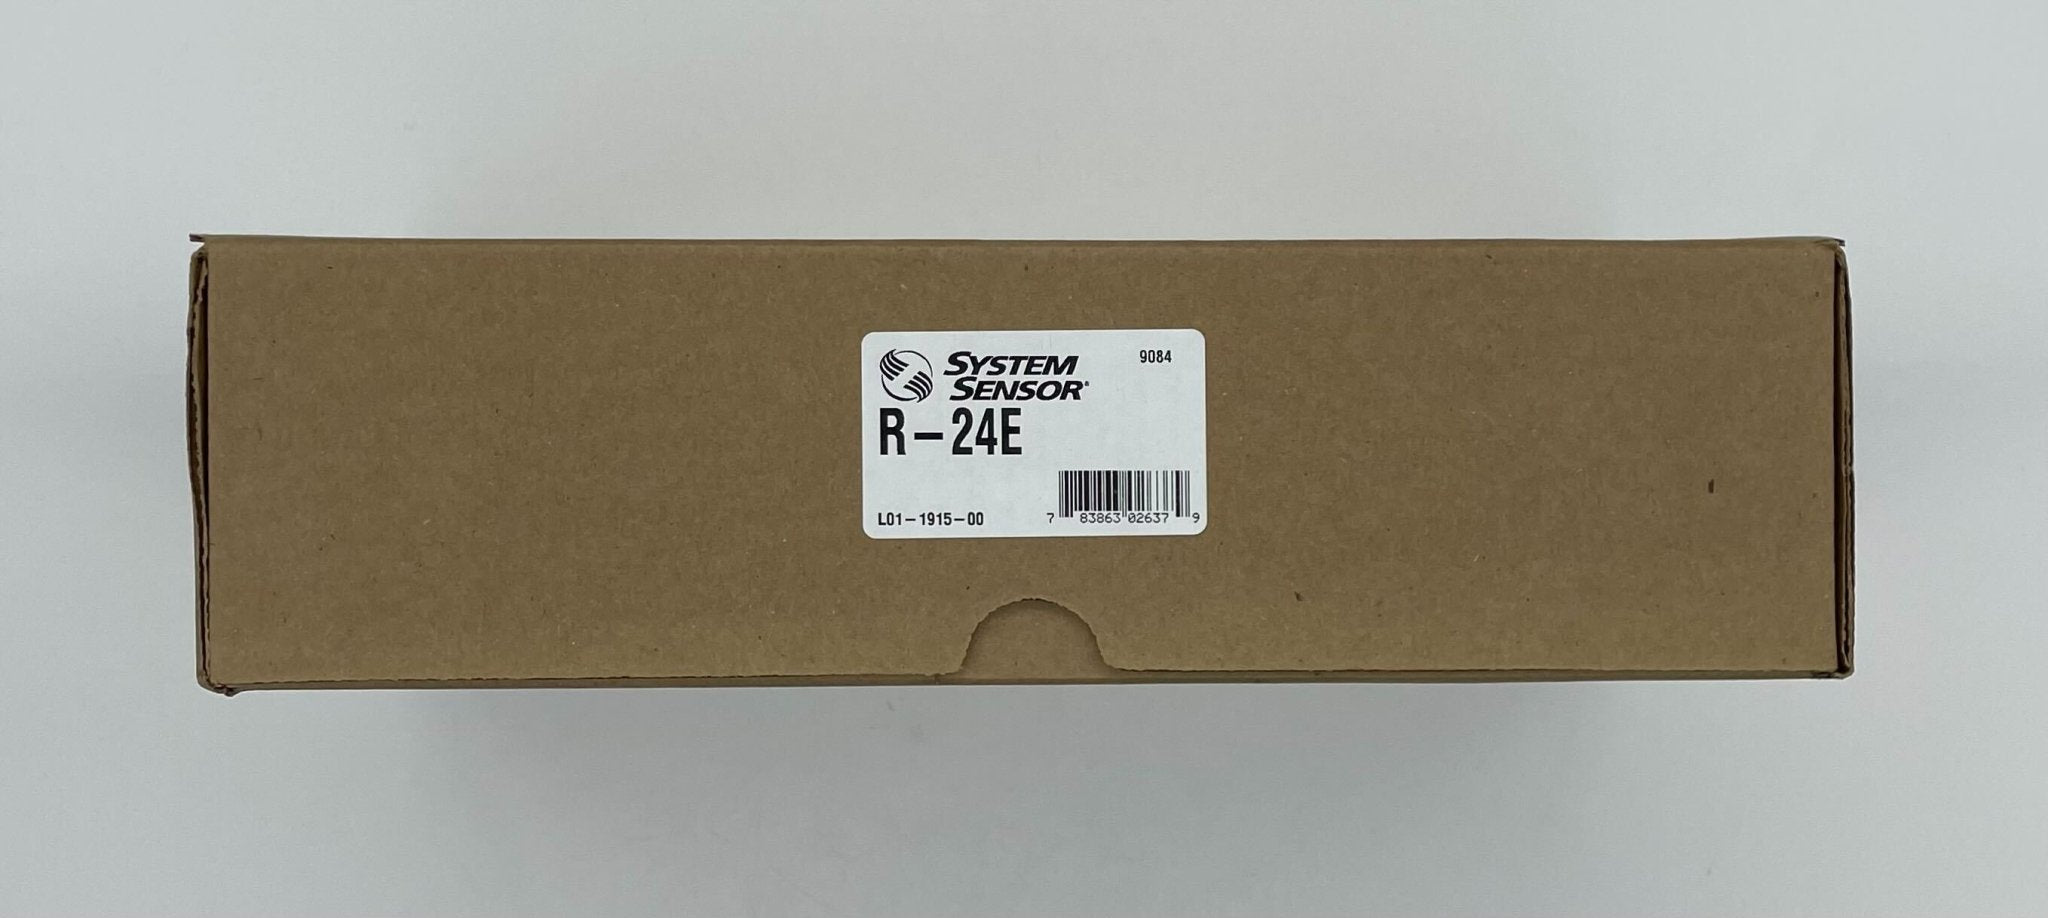 System Sensor R-24E - The Fire Alarm Supplier